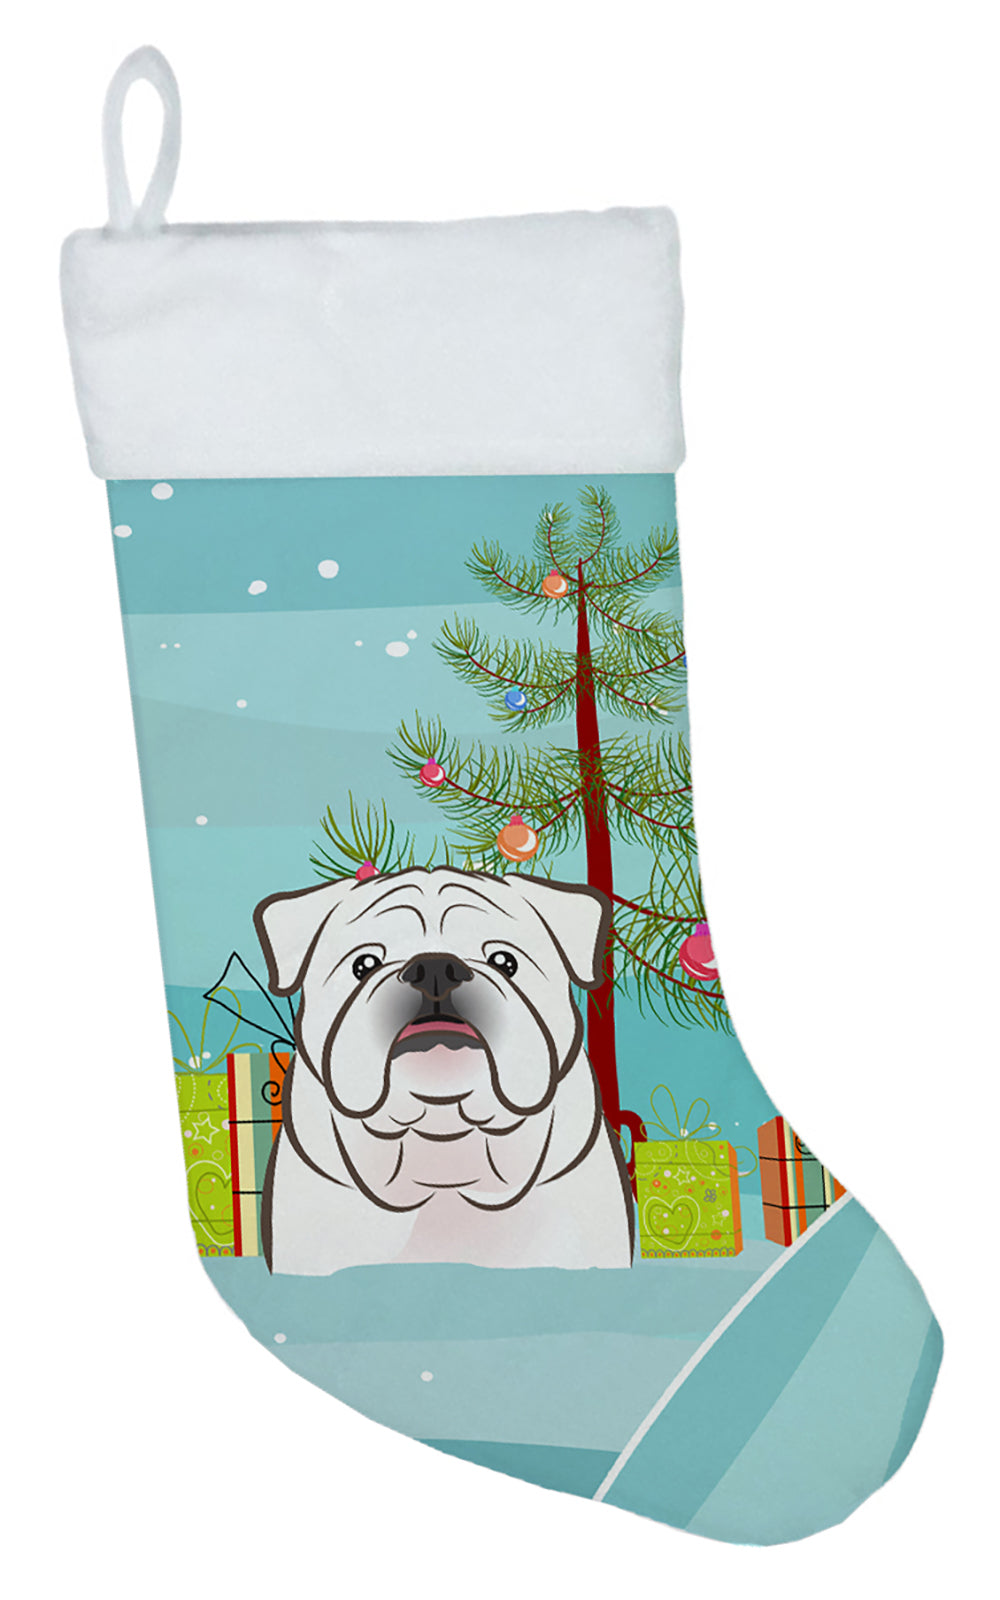 Christmas Tree and White English Bulldog Christmas Stocking